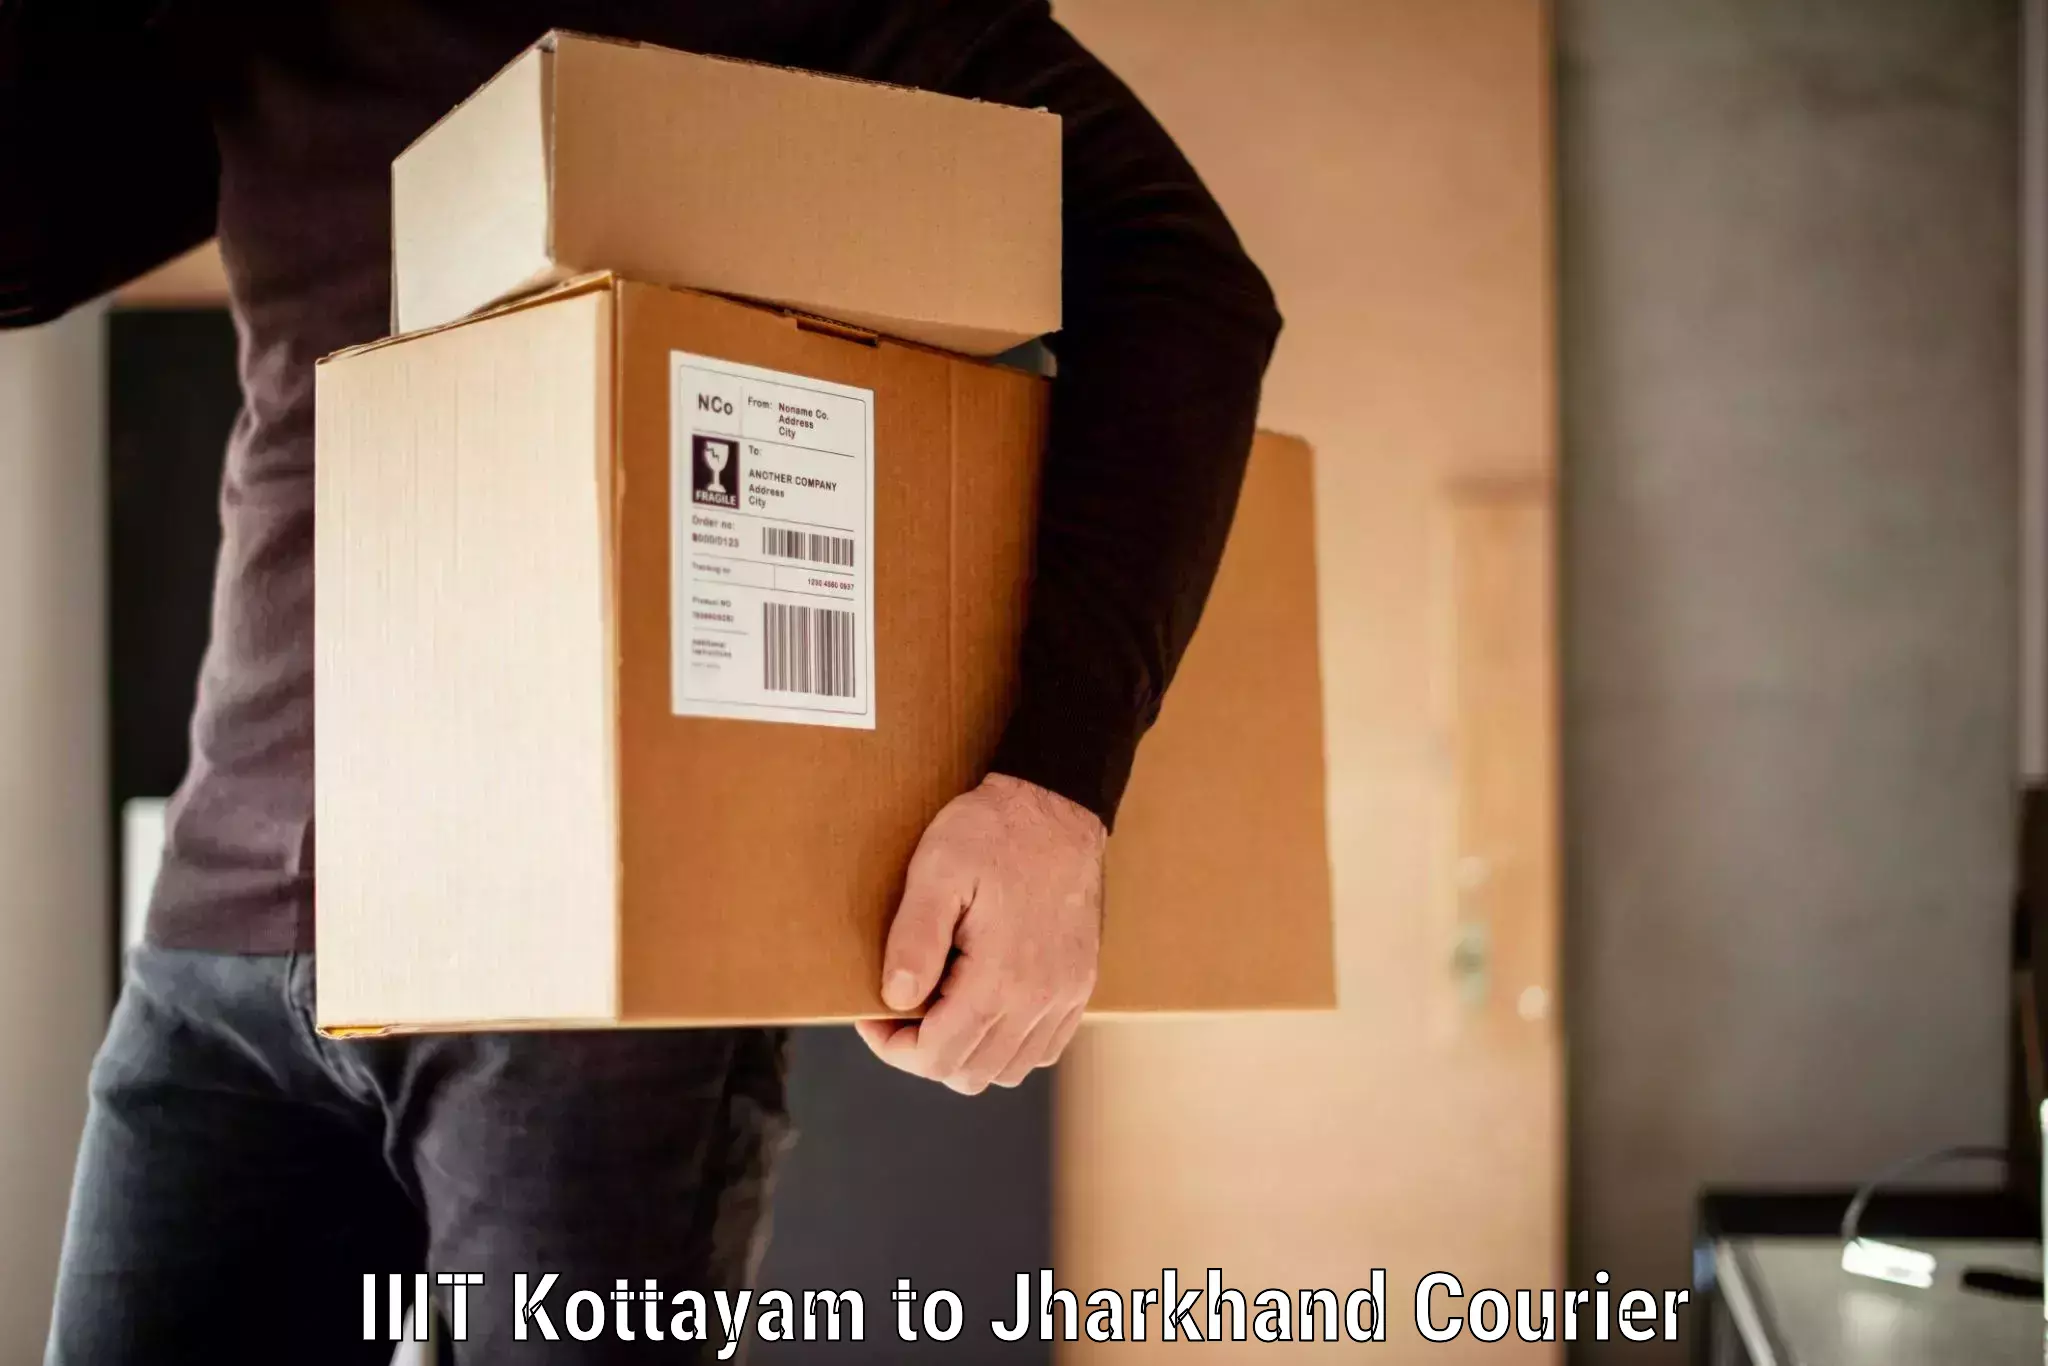 Luggage transport operations IIIT Kottayam to Hariharganj